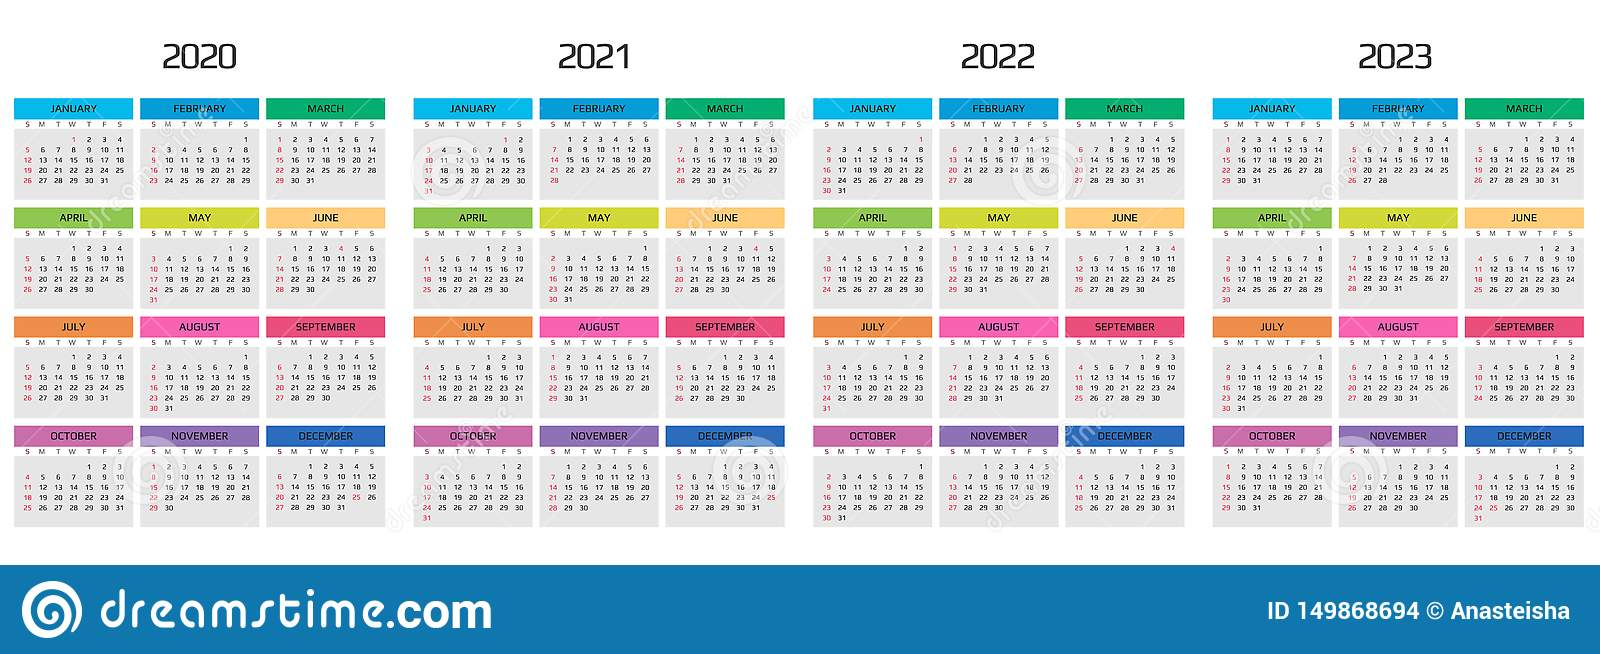 Risd 202223 Calendar Customize and Print